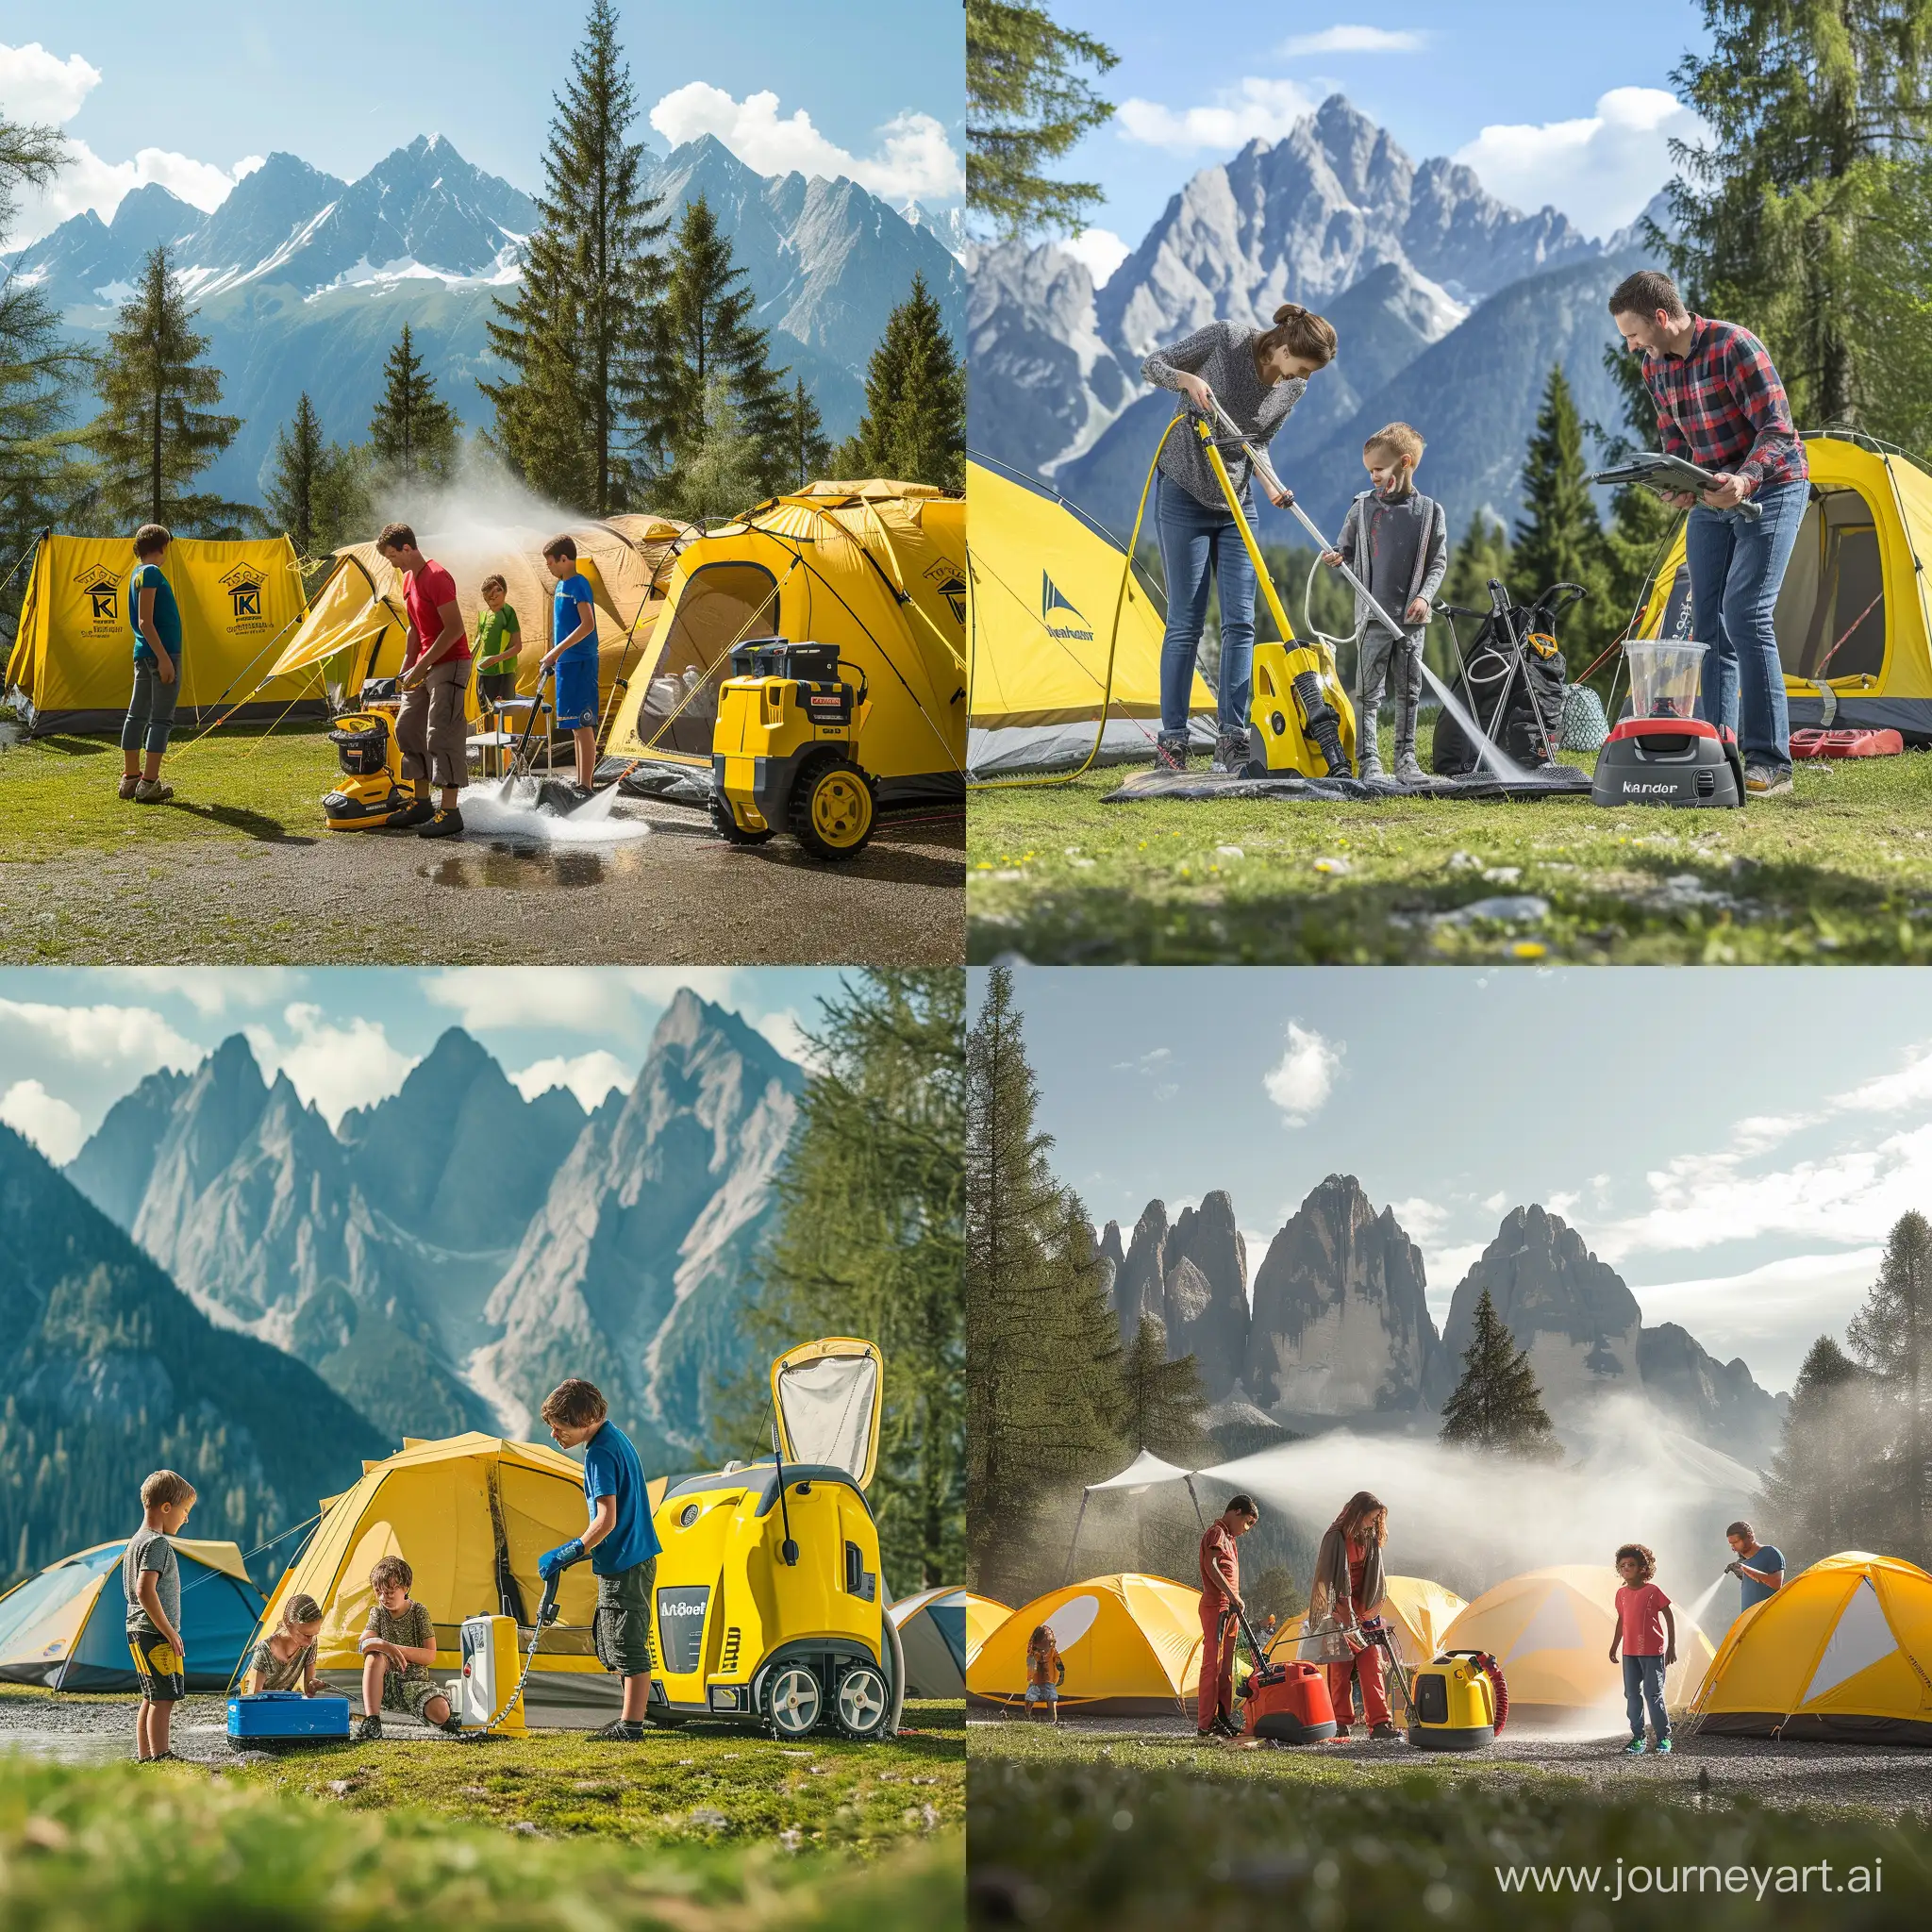 Семья у лагеря в горах чистит палатки и снаряжение с помощью техники Karcher на фоне красивой природы.